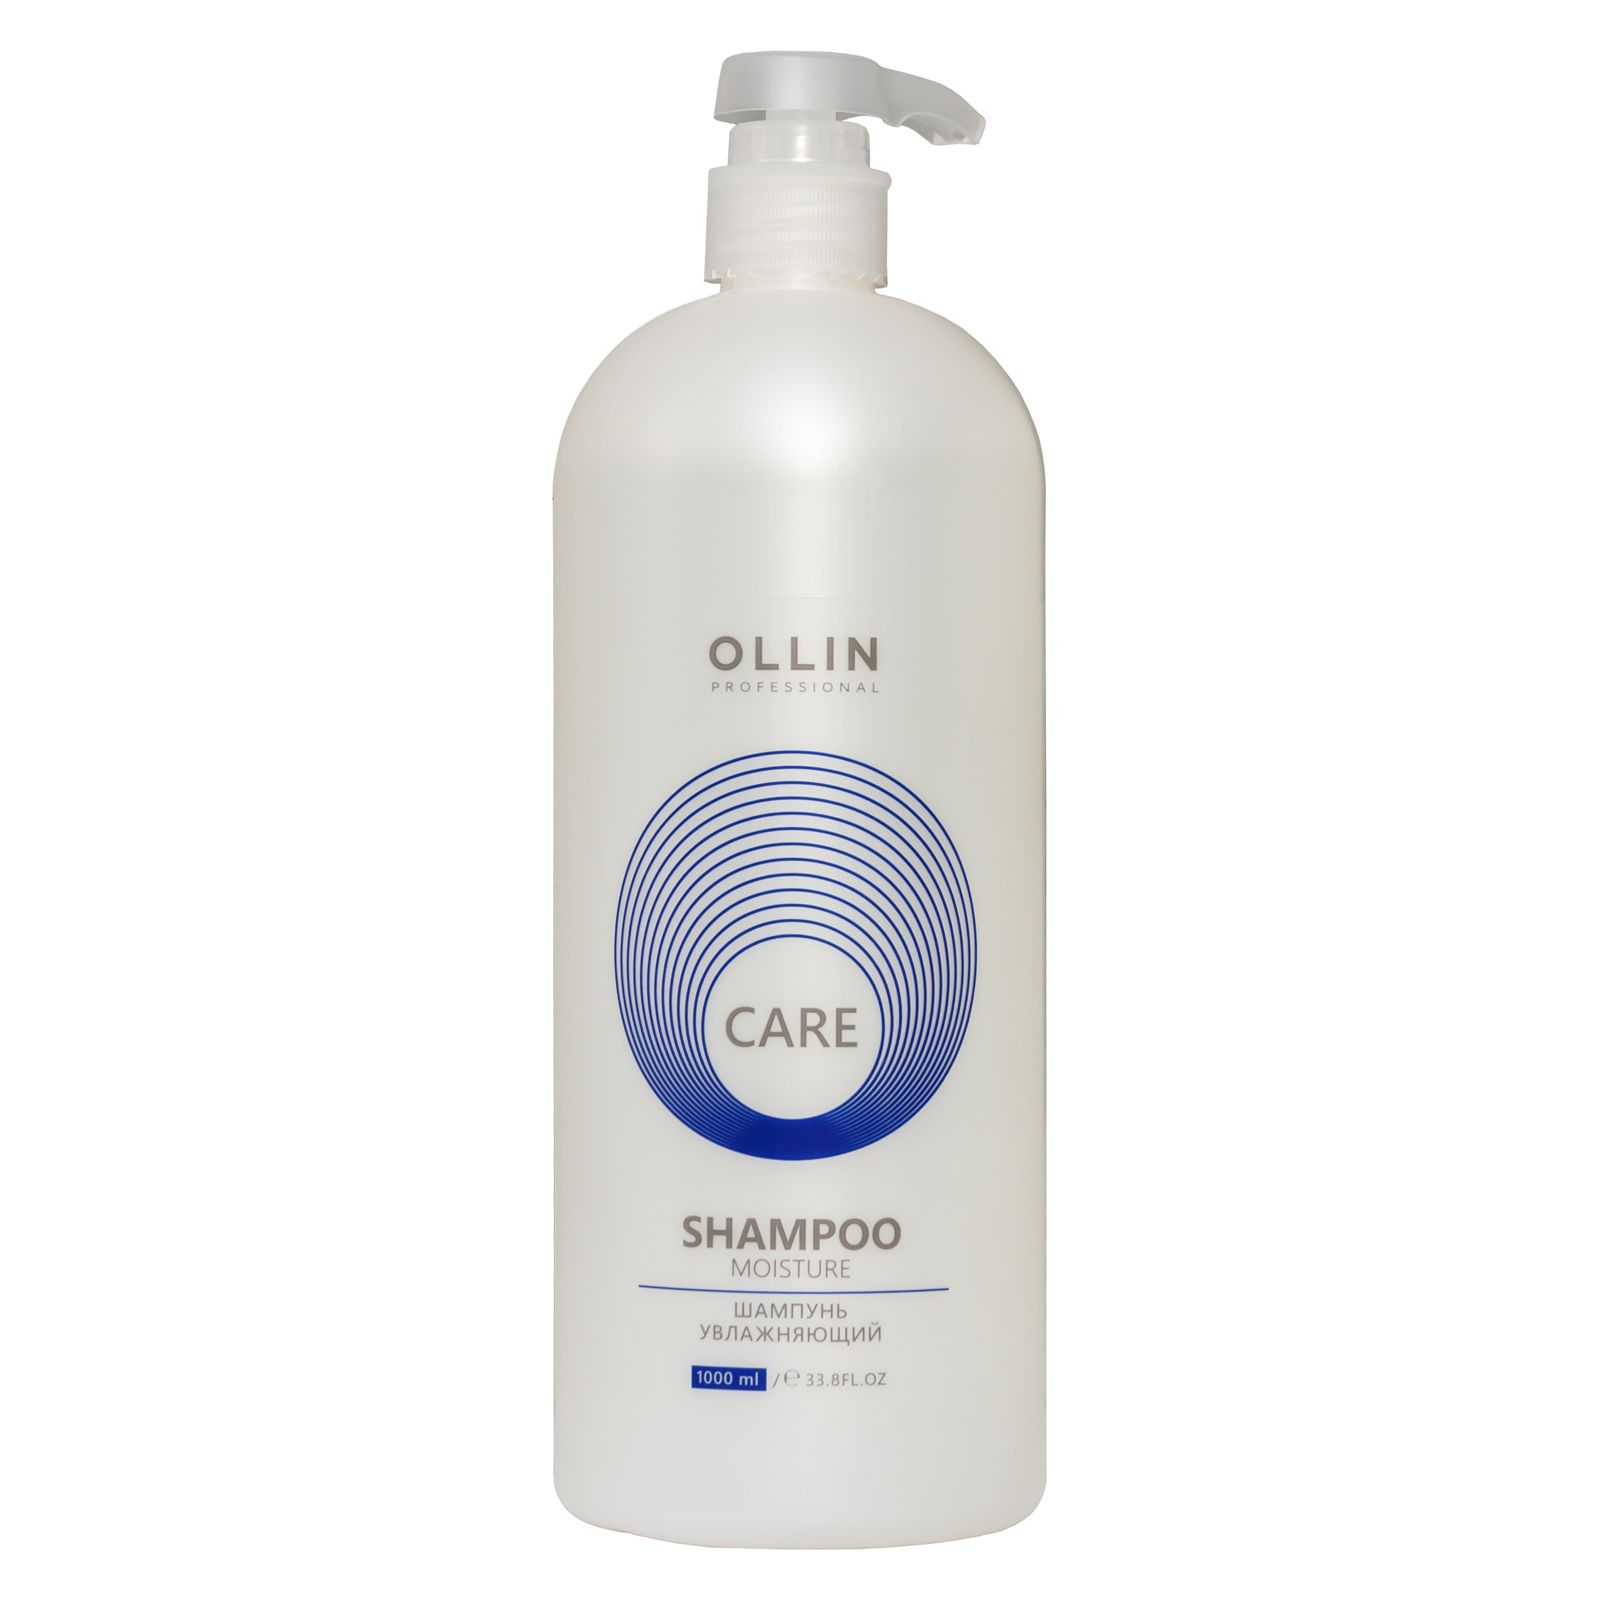 Ollin Professional Care Moisture Shampoo - Шампунь увлажняющий 1000 мл